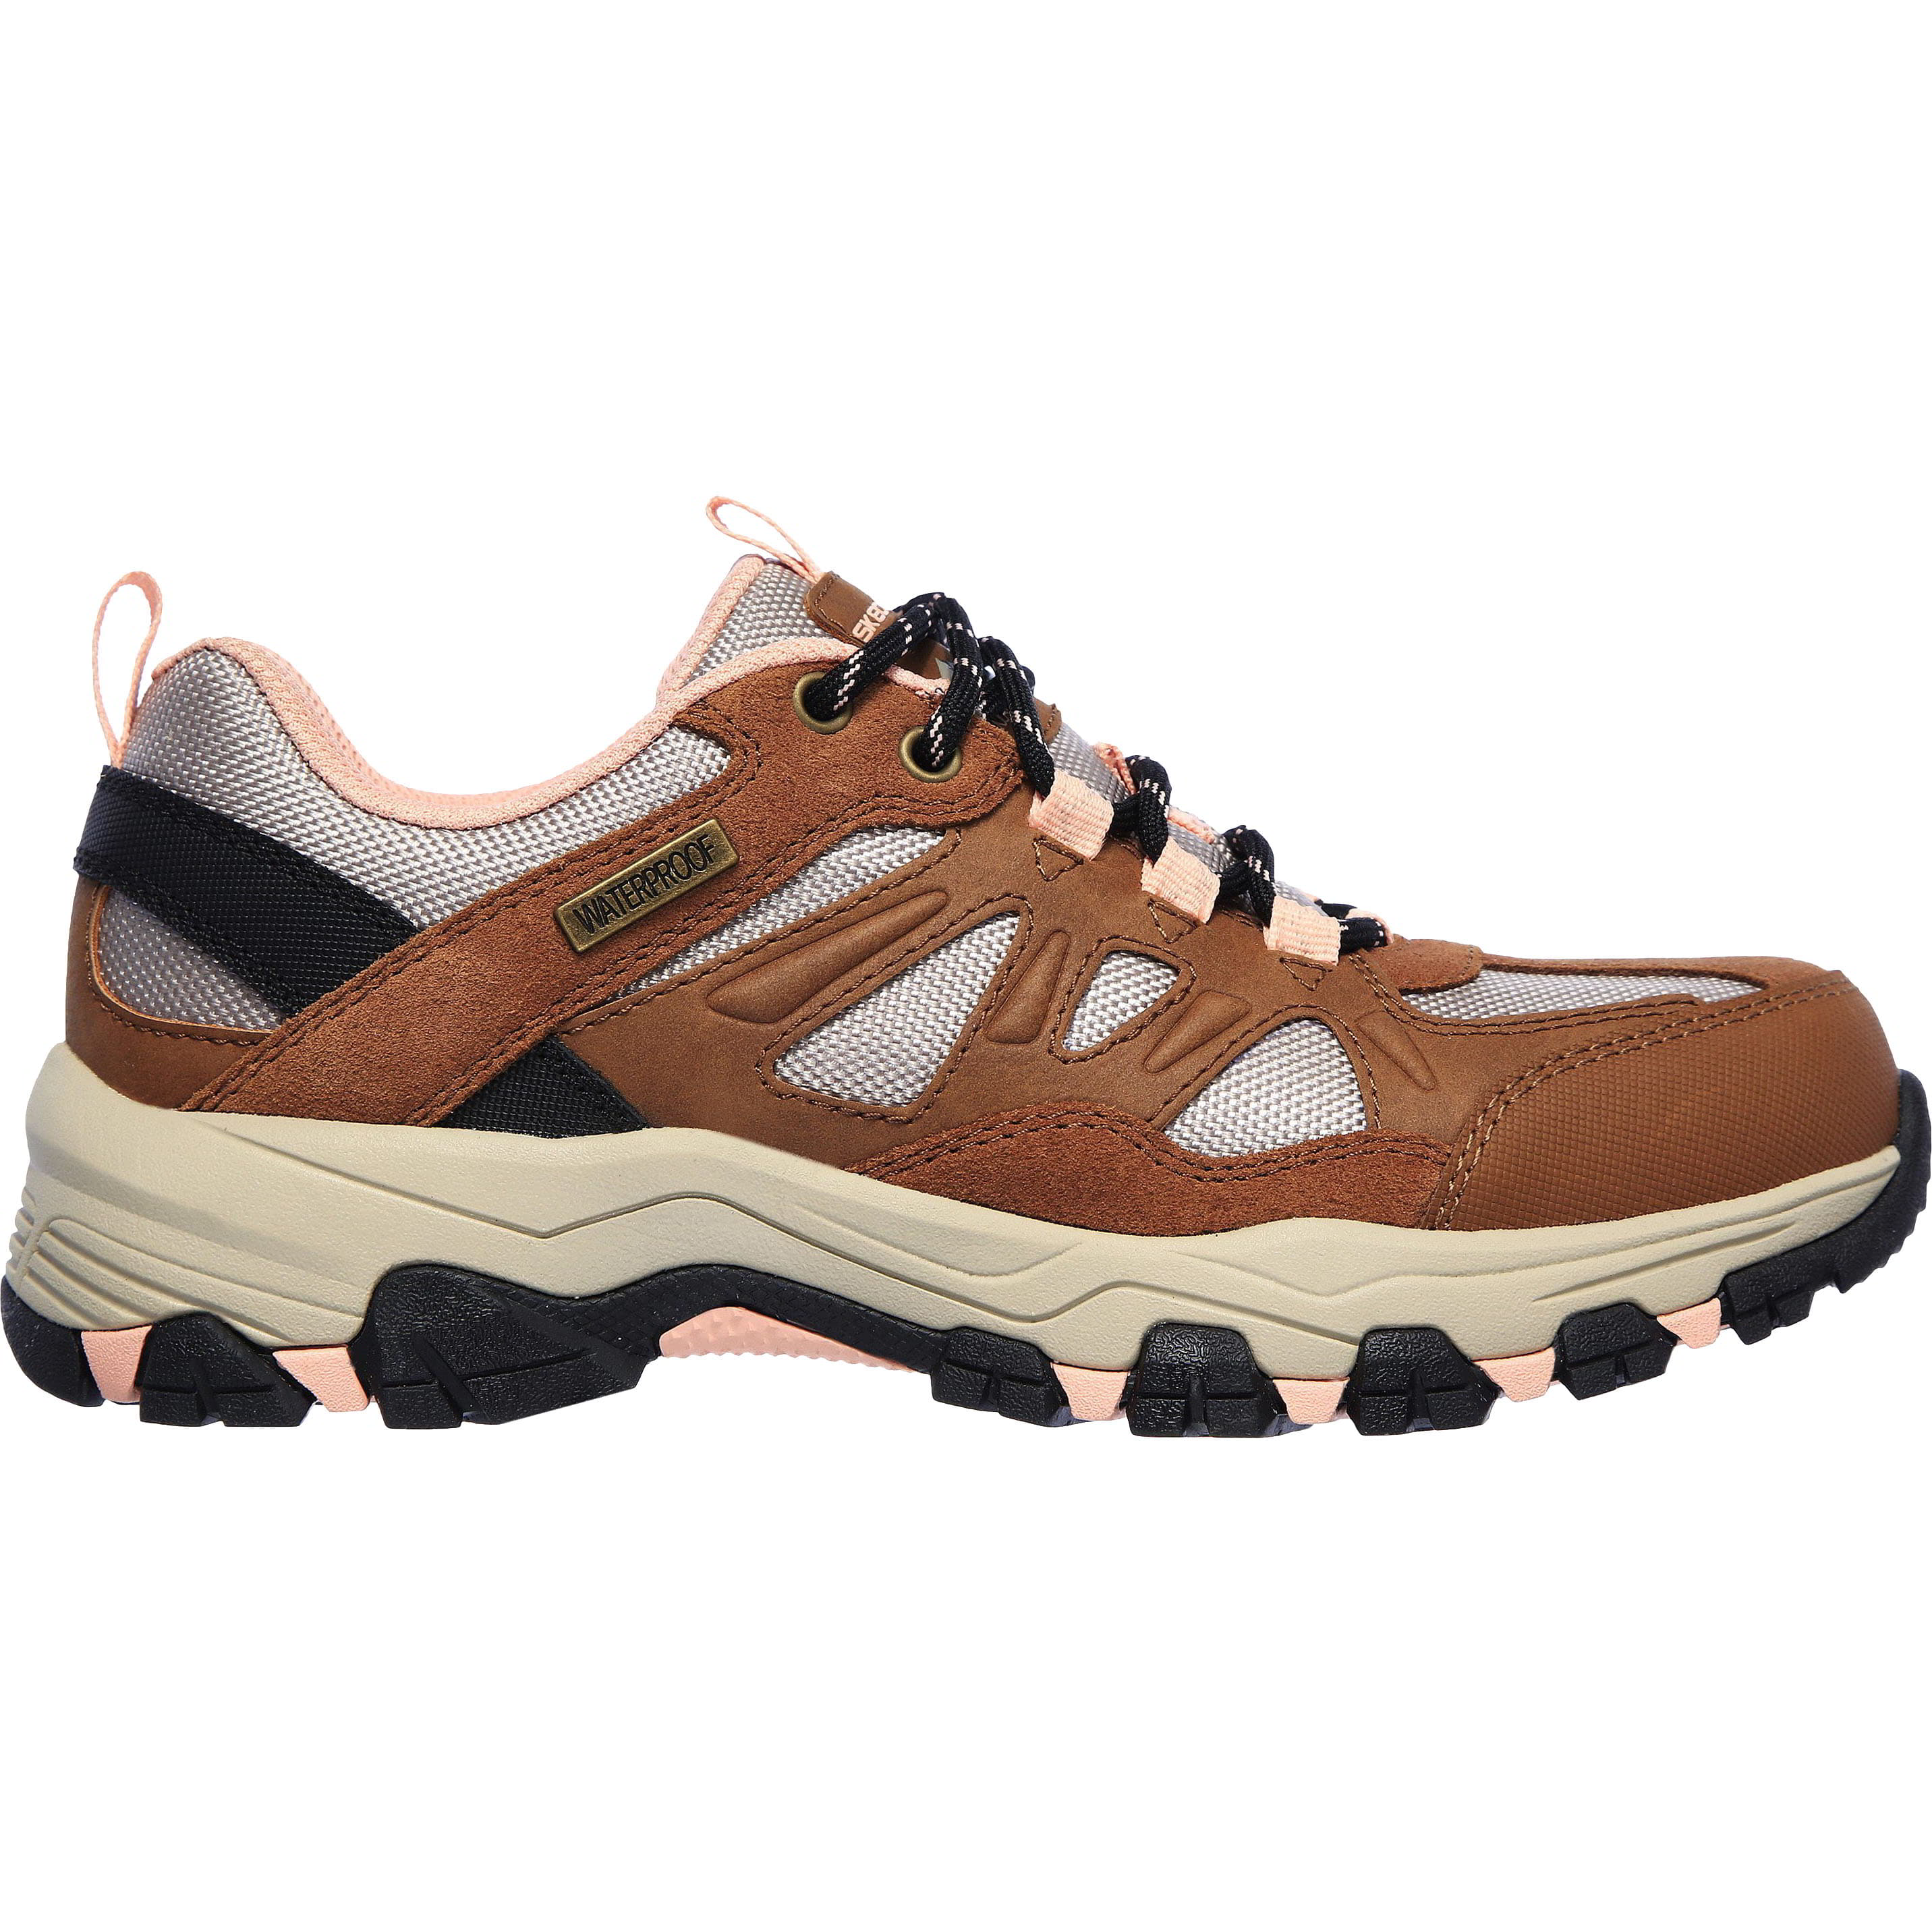 Skechers Womens Selmen West Highland Waterproof Walking Shoes - Brown Tan 2951